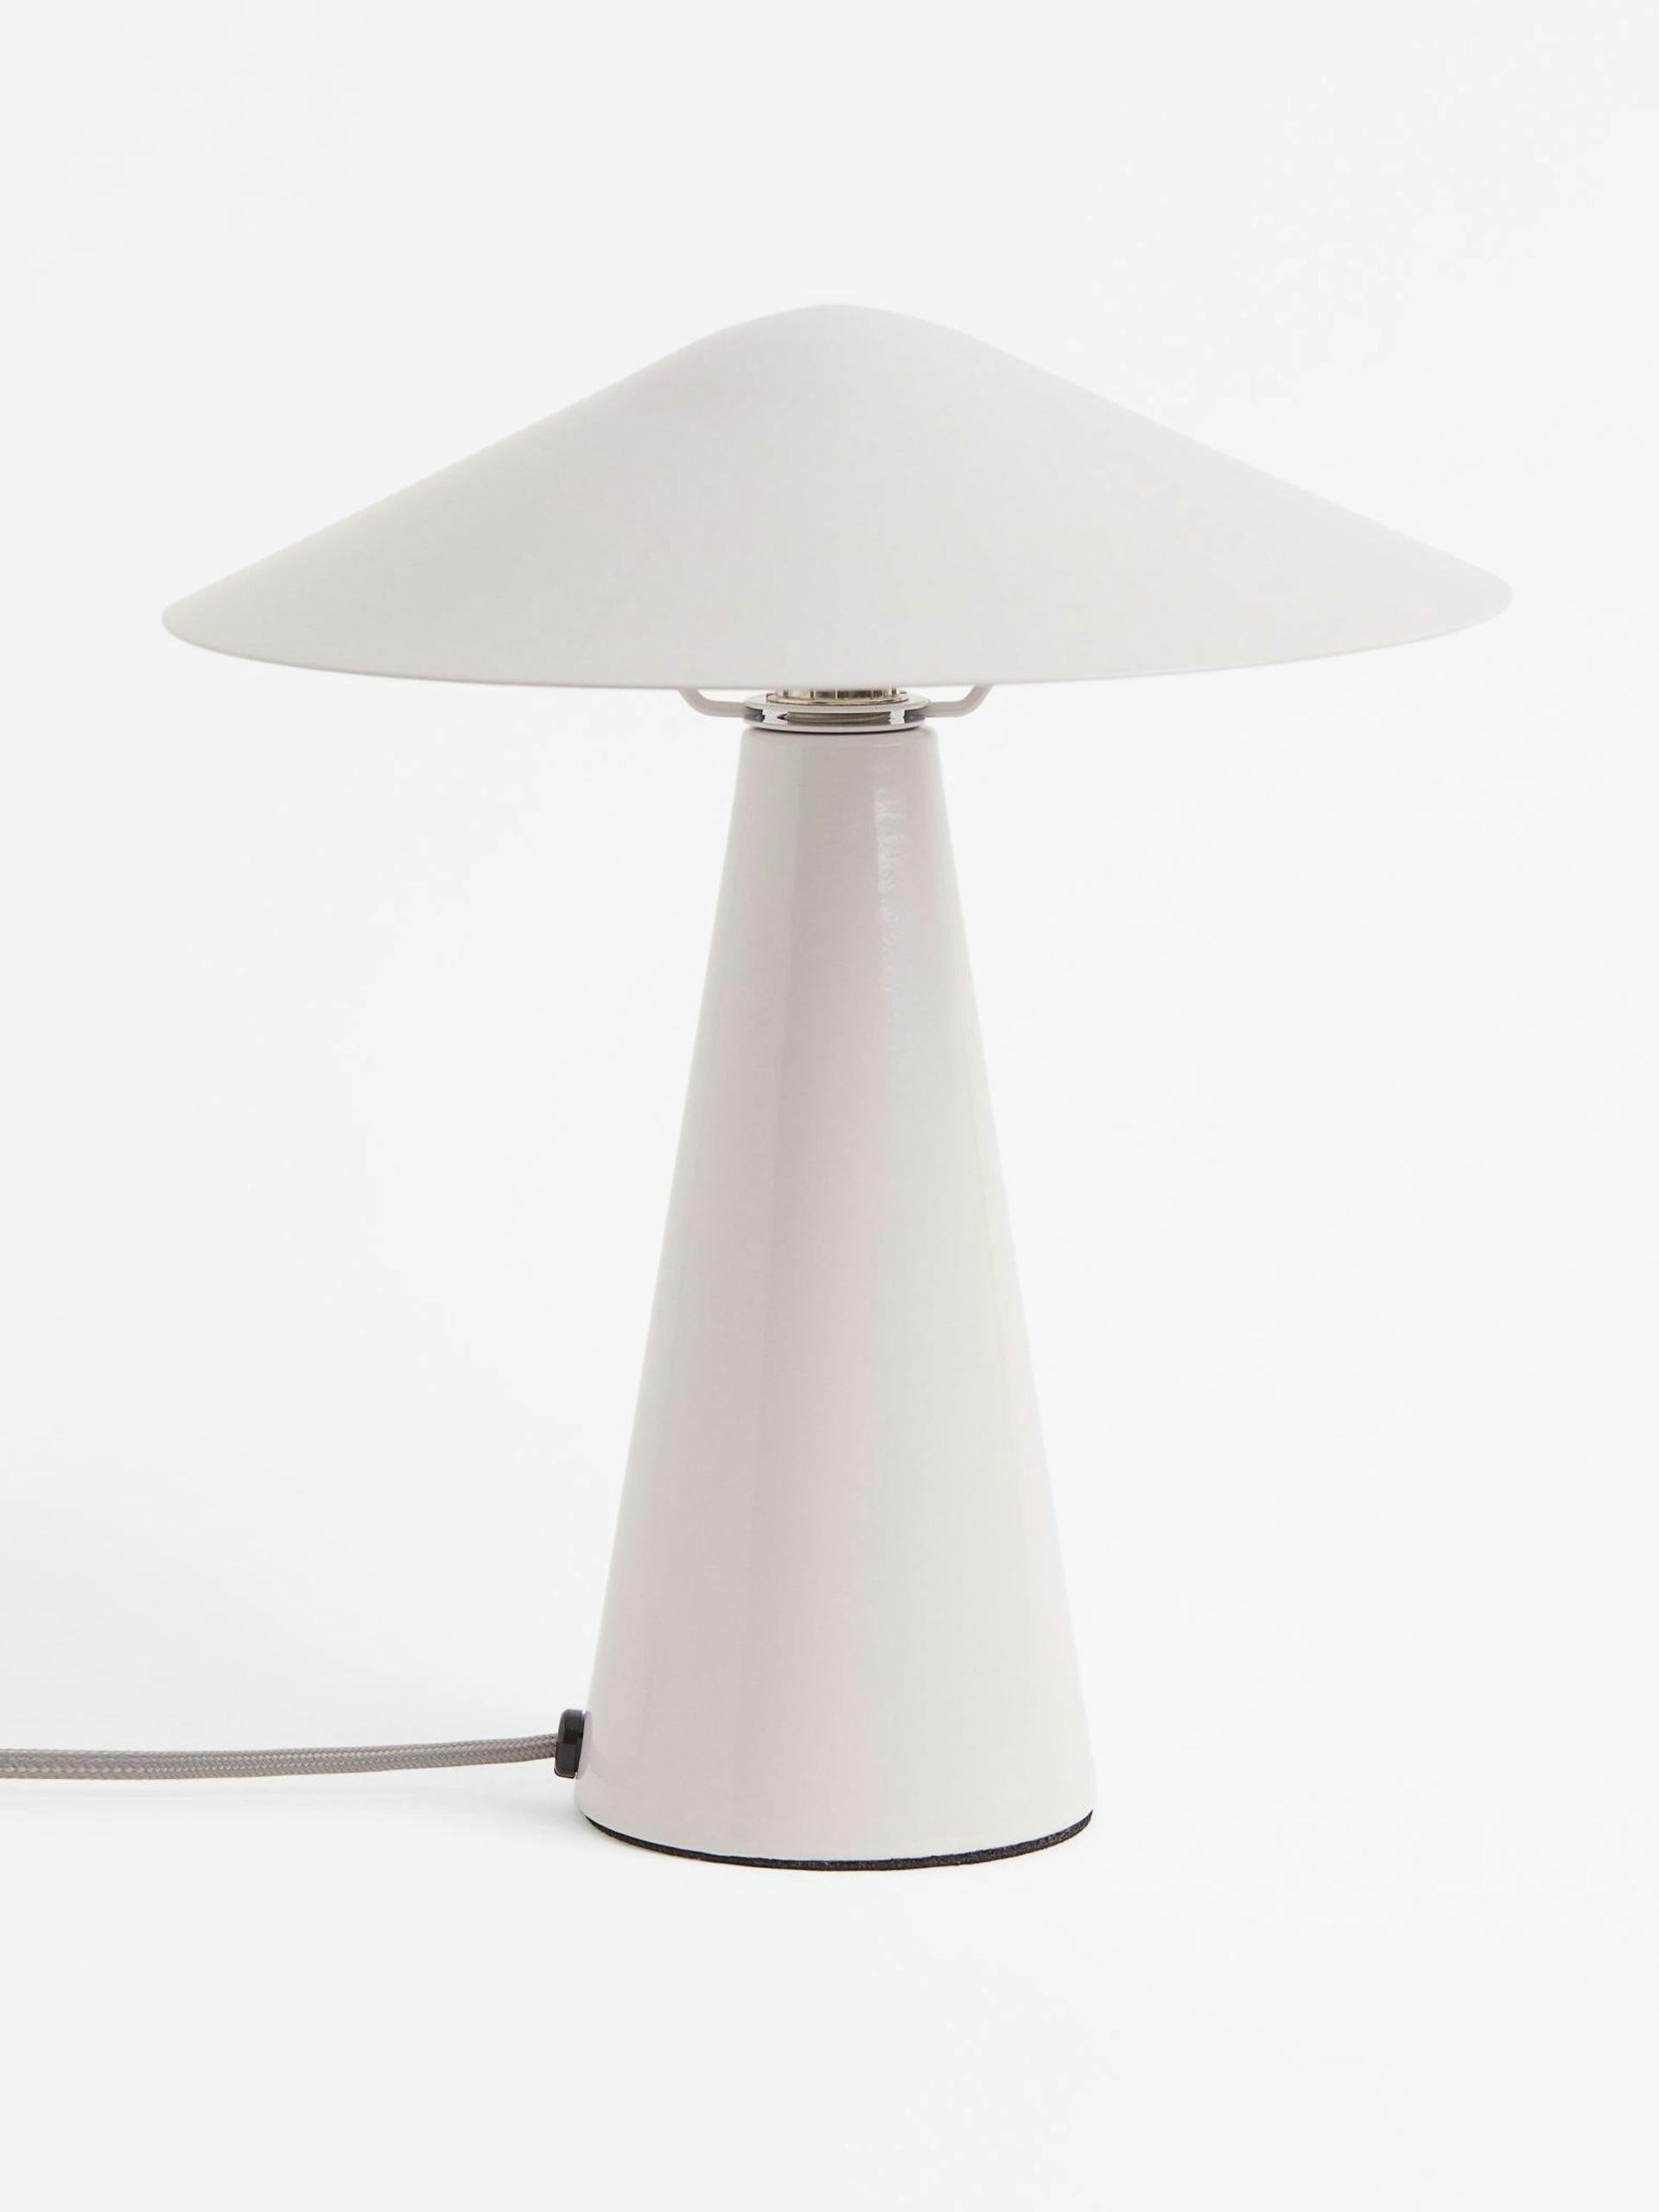 Metal mushroom table lamp